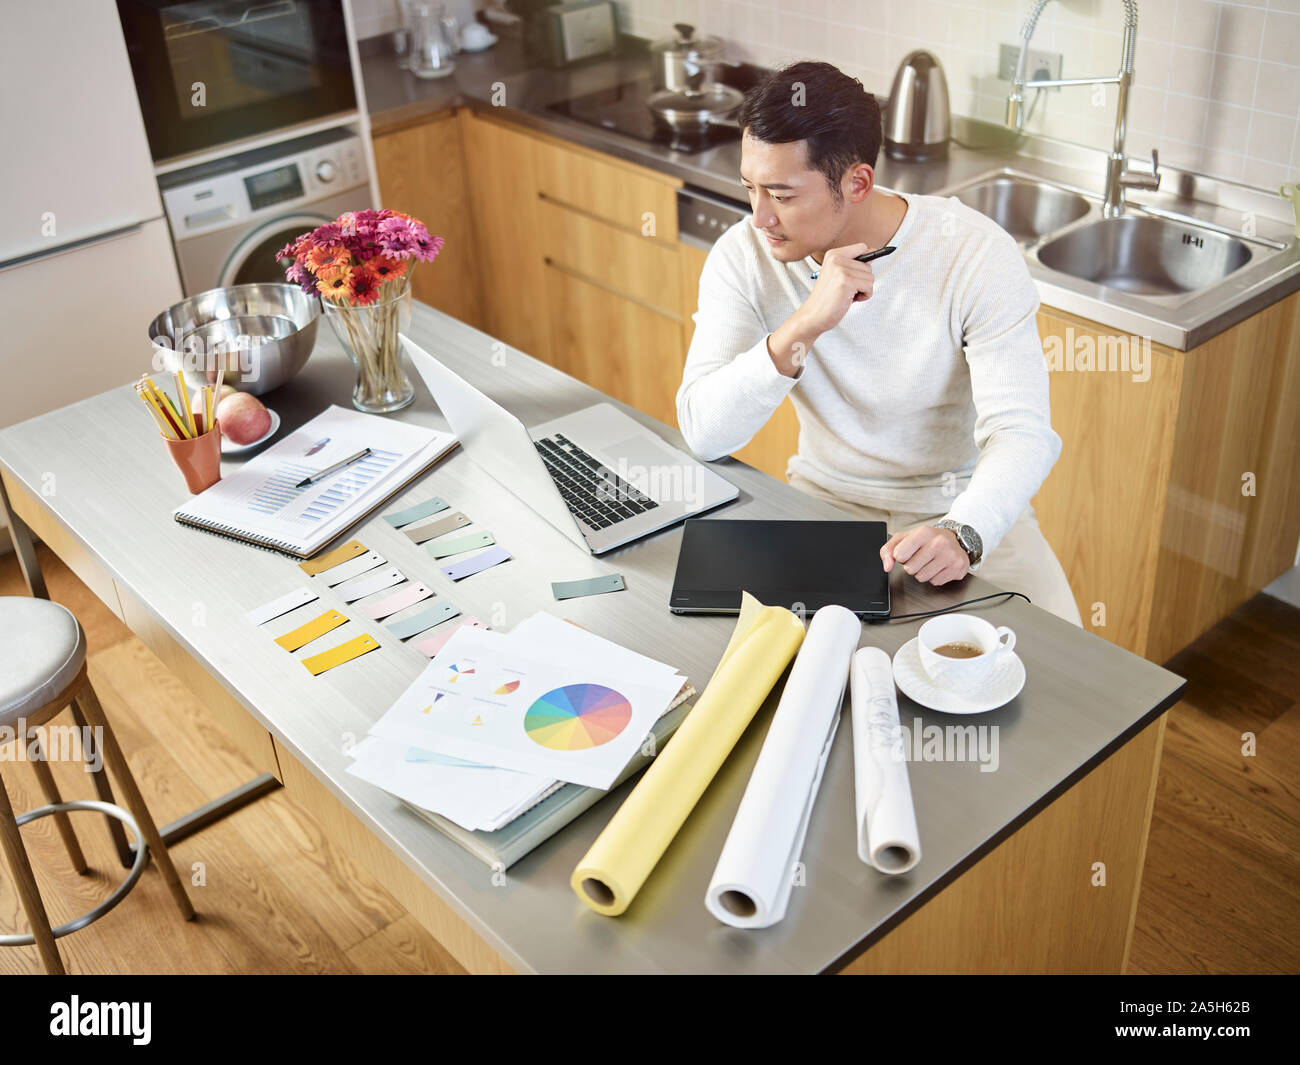 Portrait d'un jeune designer asiatique assis au comptoir de la cuisine de travailler sur un dessin à l'aide d'un ordinateur portable et tablette numérique Banque D'Images